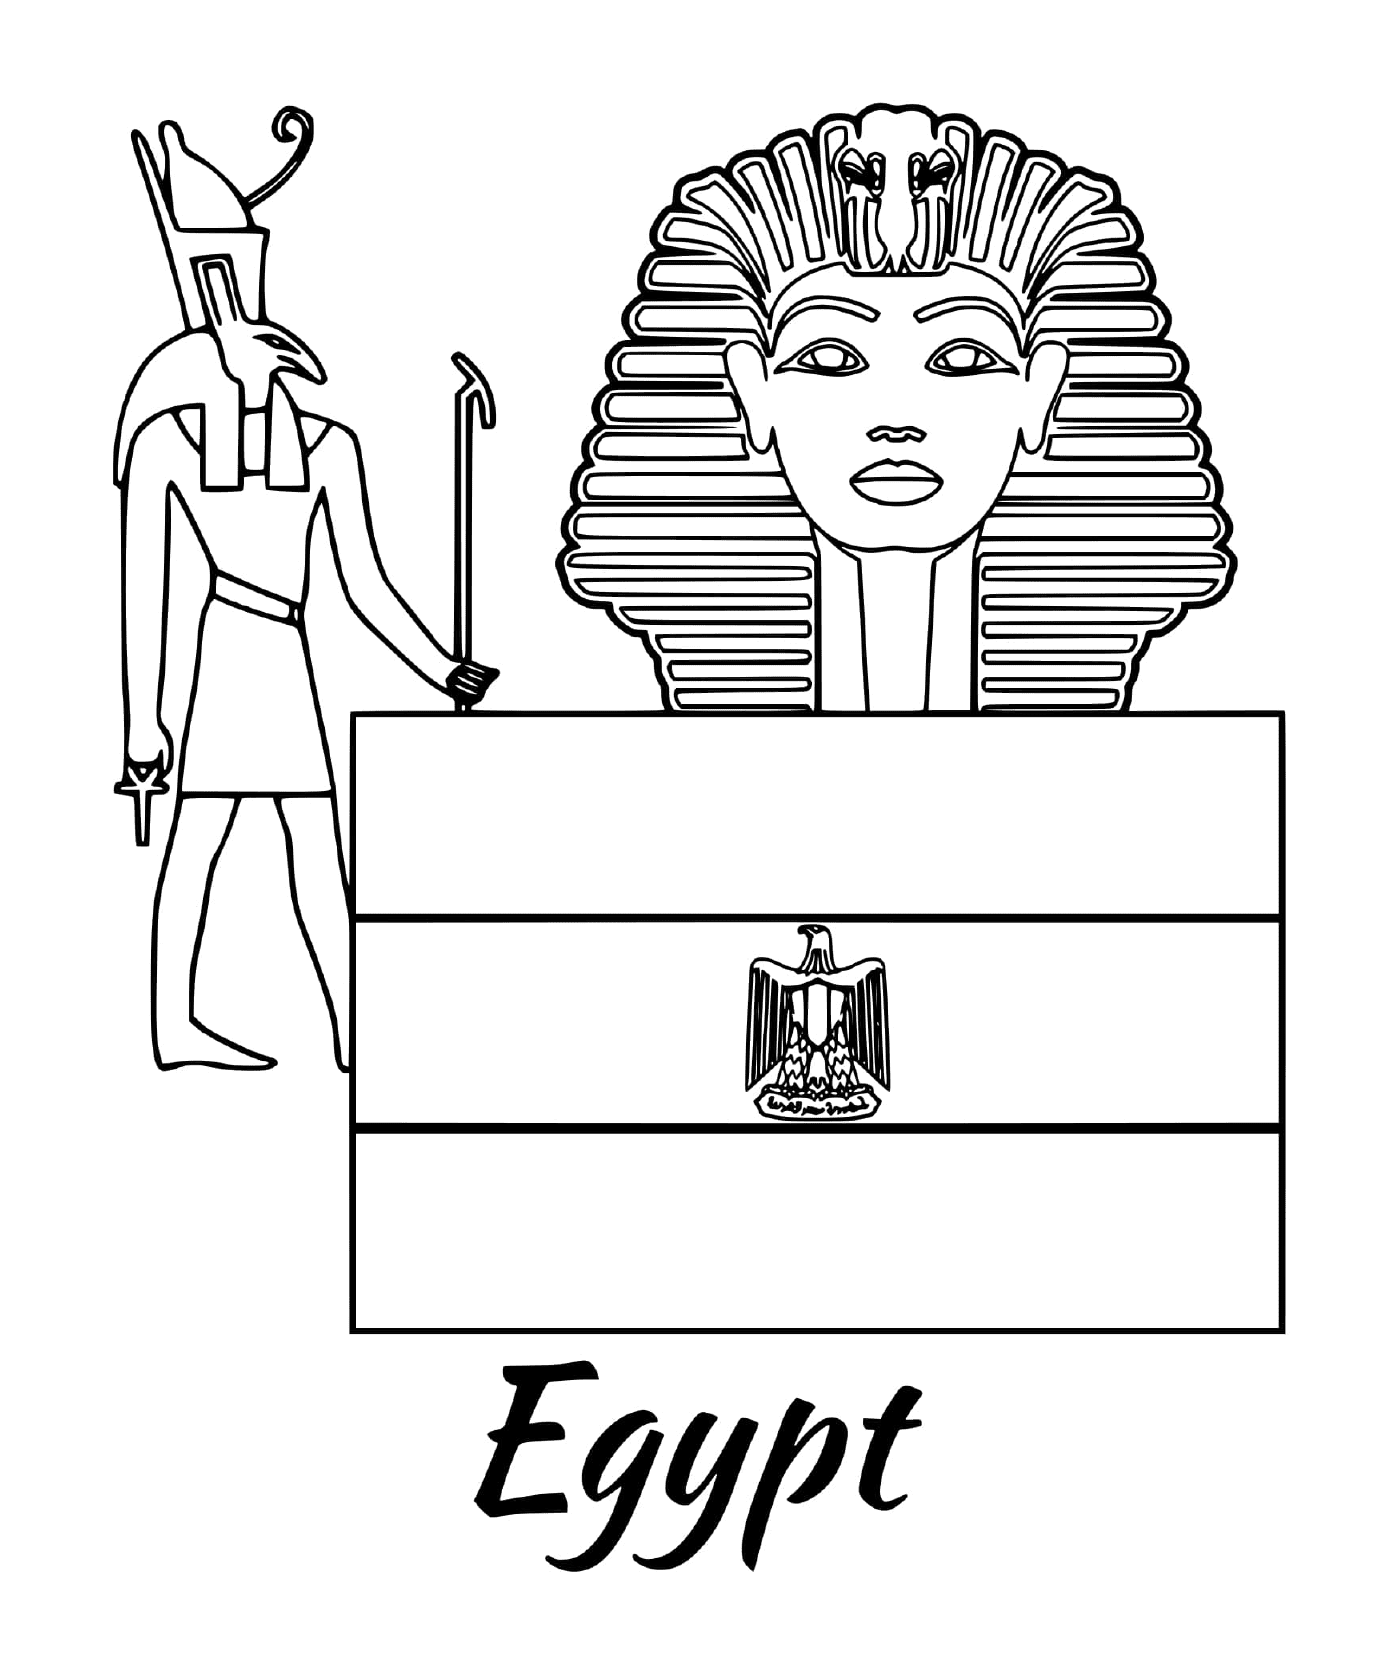  स्पोक्स के साथ मिस्र के फ्लैग 